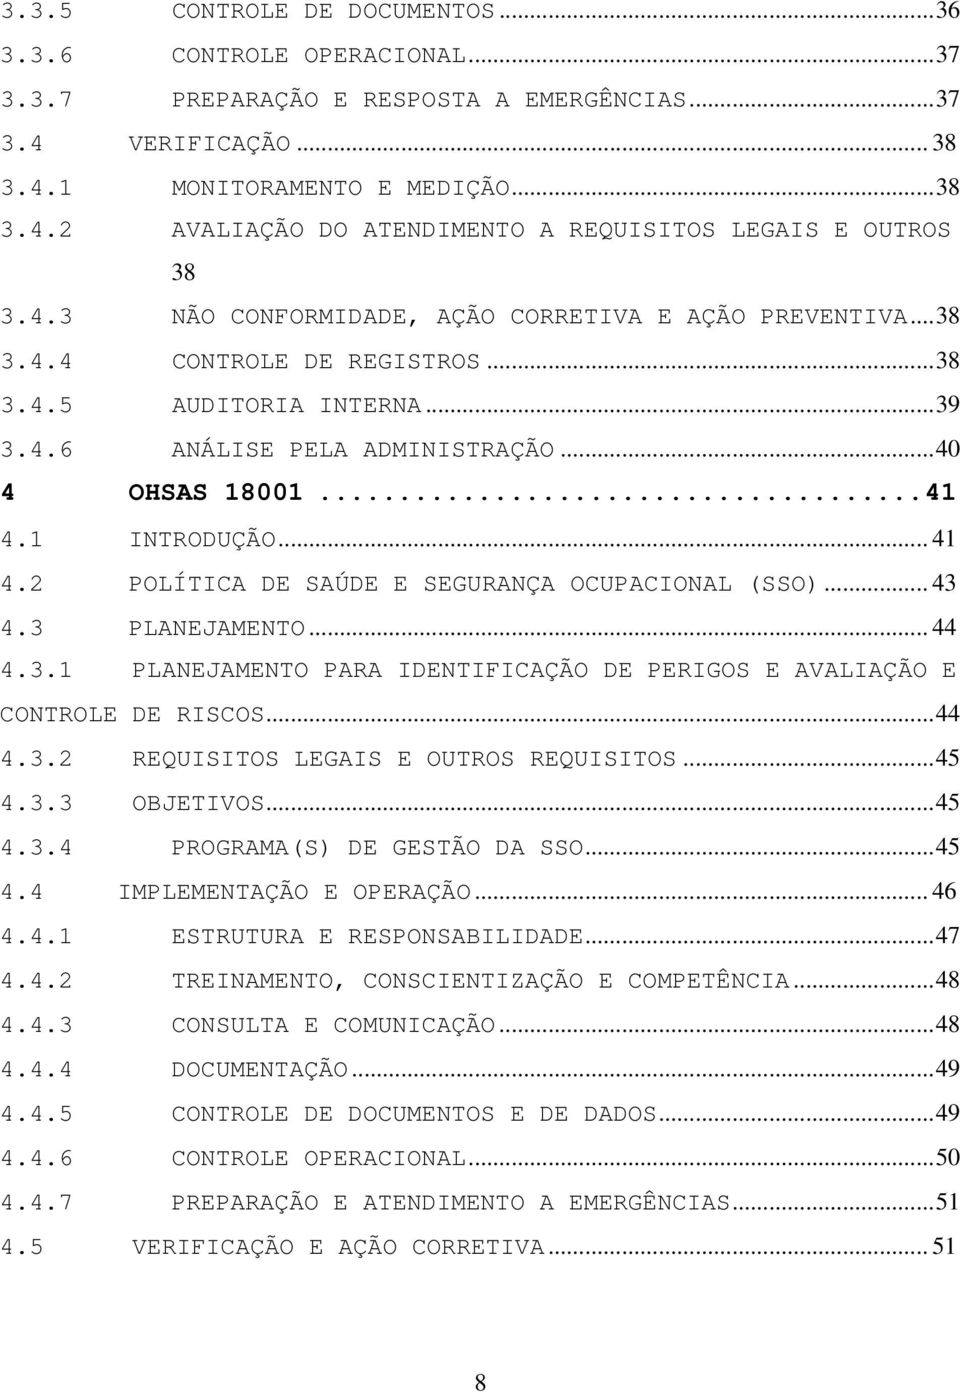 2 POLÍTICA DE SAÚDE E SEGURANÇA OCUPACIONAL (SSO)... 43 4.3 PLANEJAMENTO... 44 4.3.1 PLANEJAMENTO PARA IDENTIFICAÇÃO DE PERIGOS E AVALIAÇÃO E CONTROLE DE RISCOS...44 4.3.2 REQUISITOS LEGAIS E OUTROS REQUISITOS.